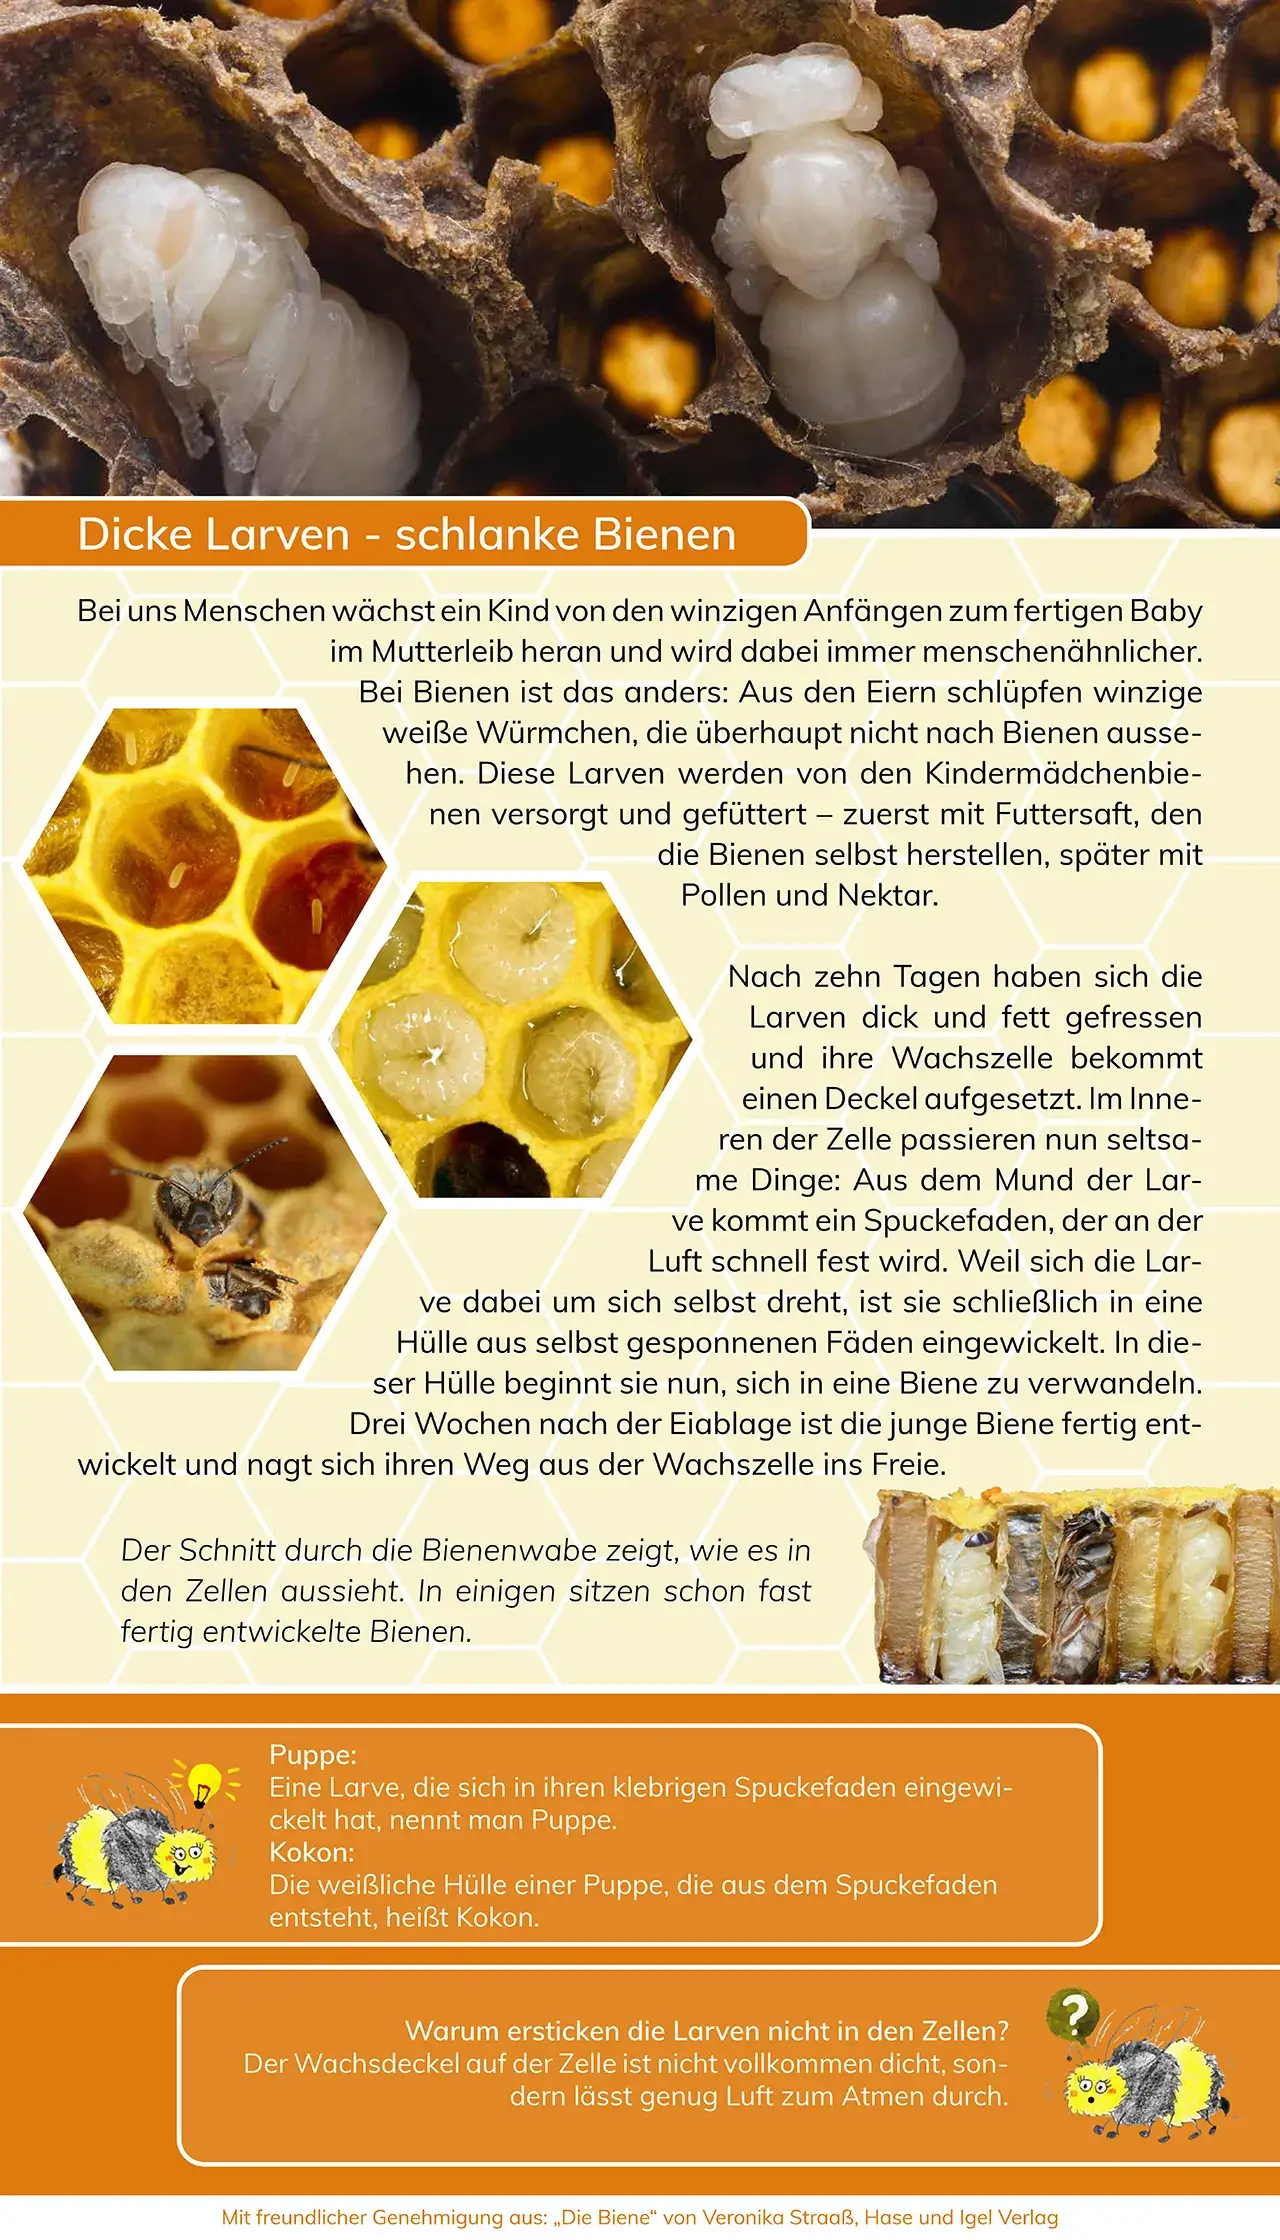 Projekte 2020 - Ausstellung - Mit den Bienen durch das Jahr - dicke Larven-schlanke Bienen